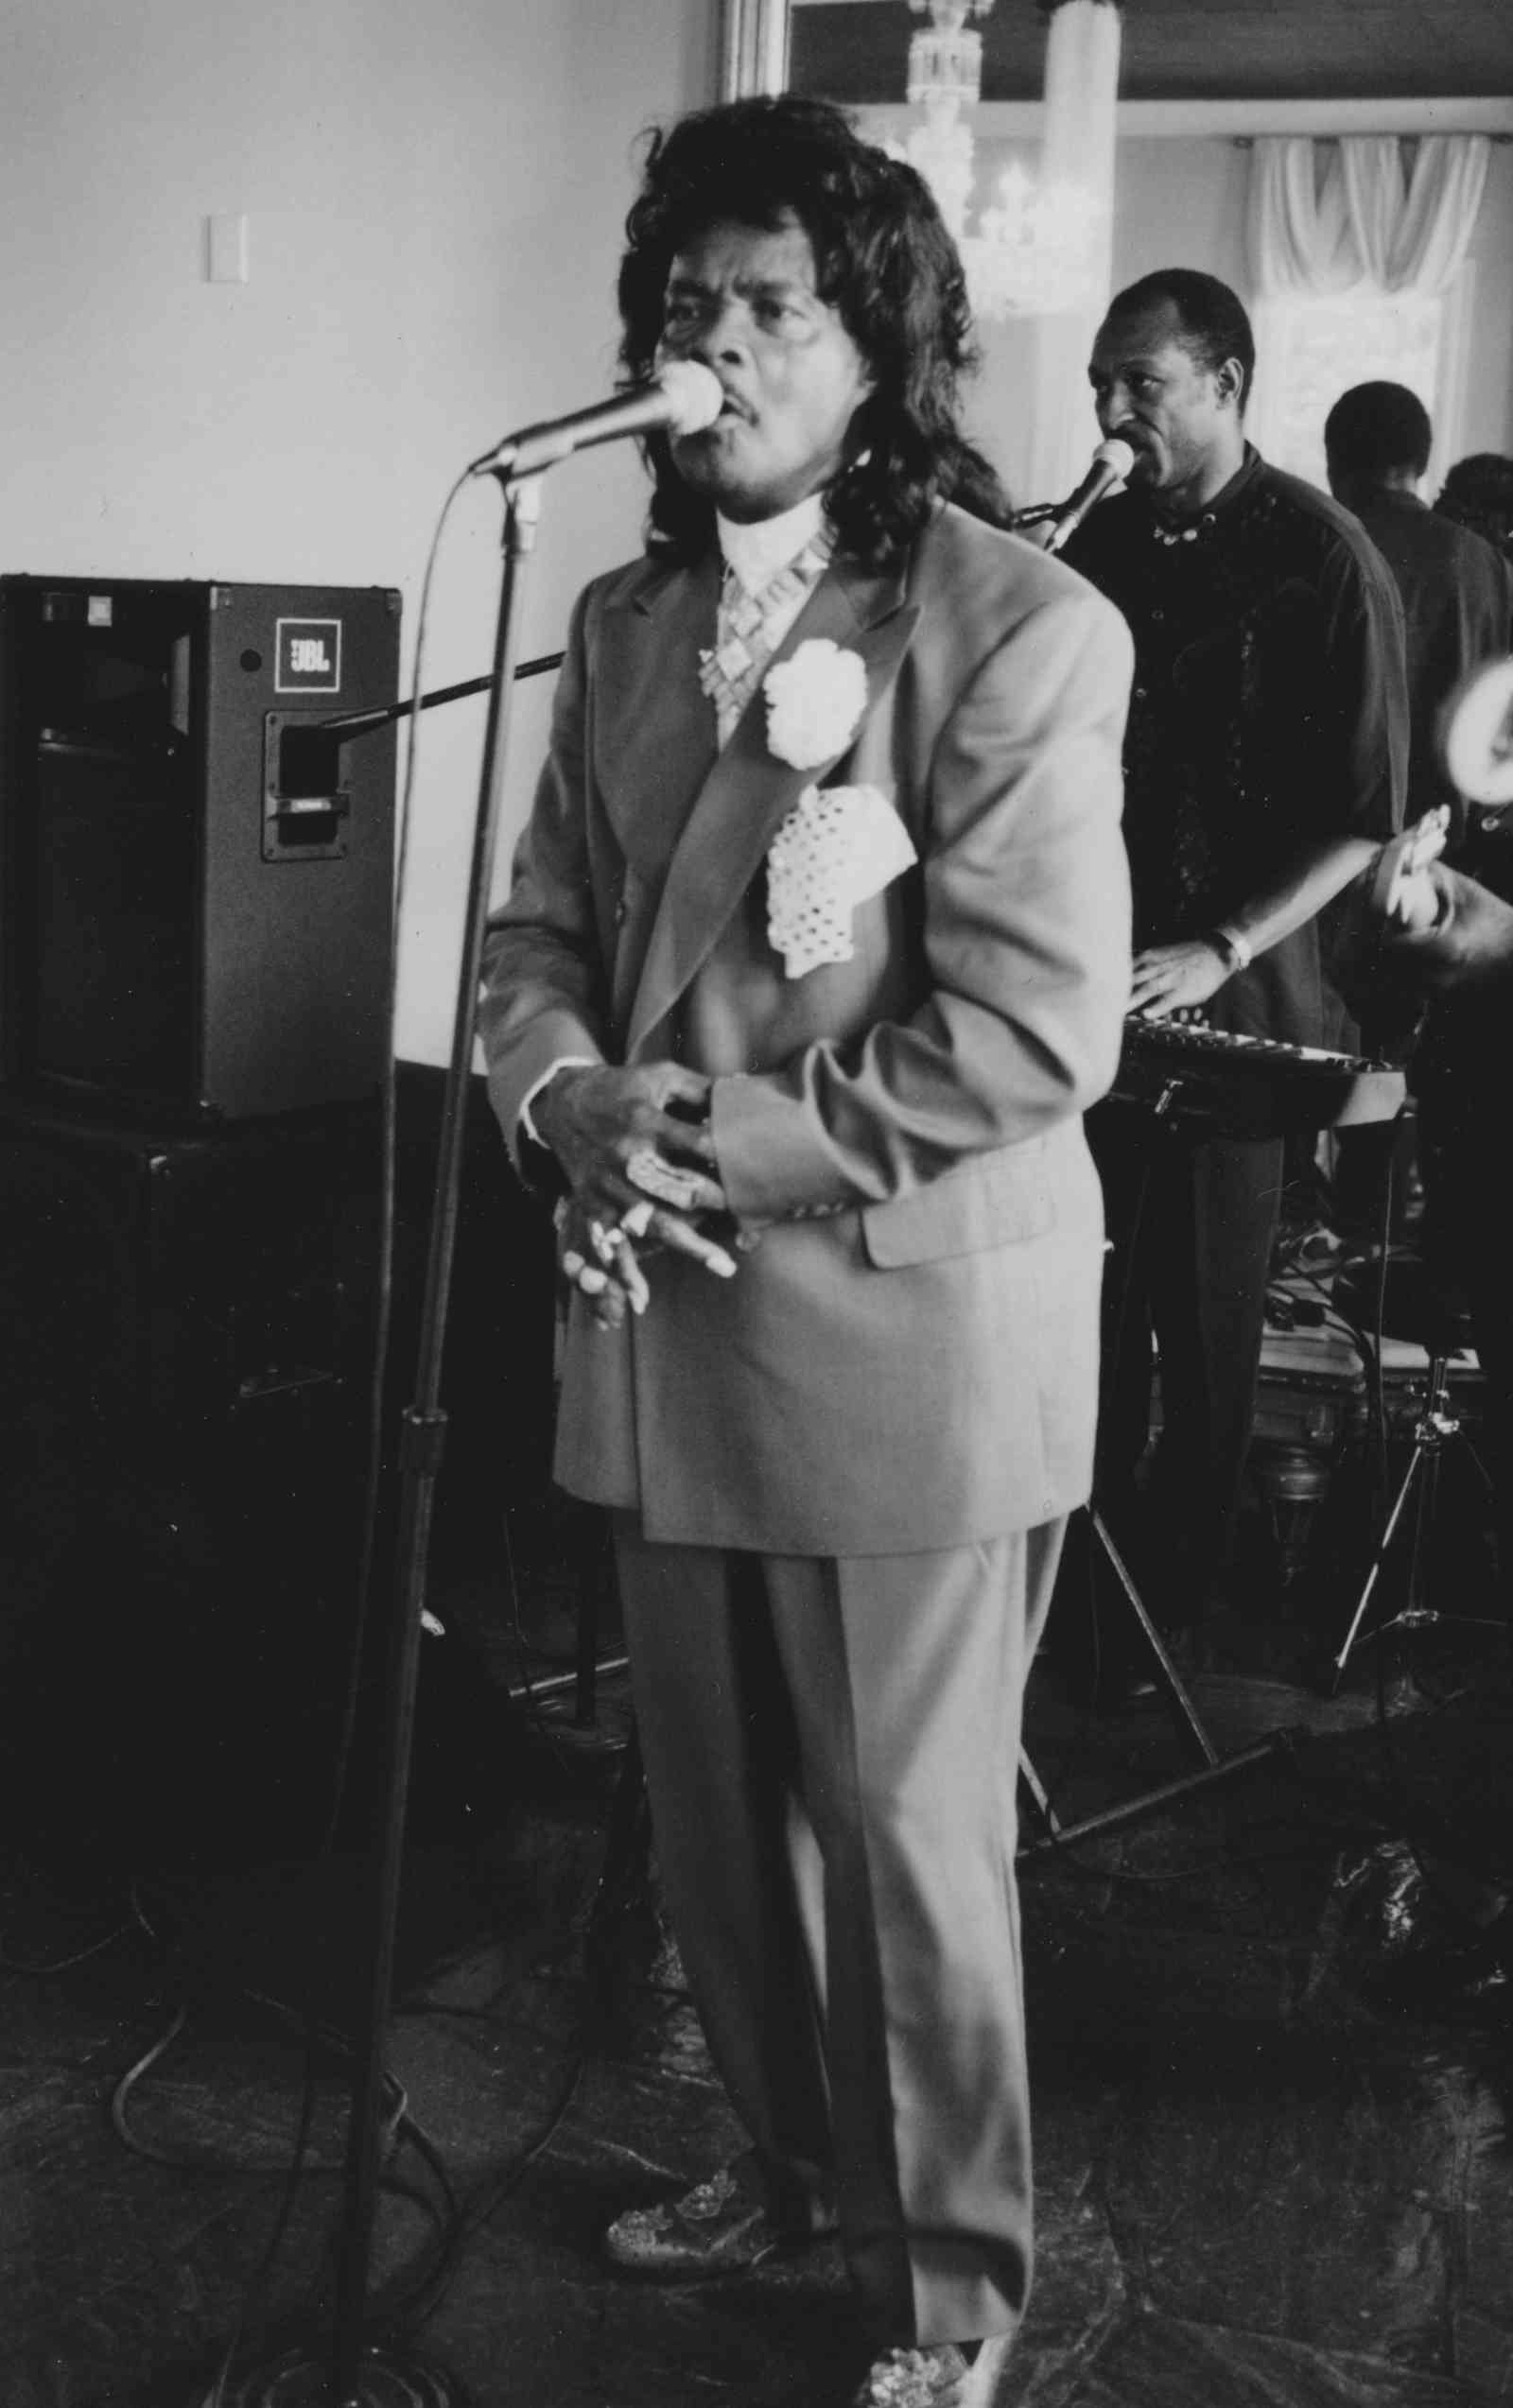 Ernie K-Doe singing at a wedding